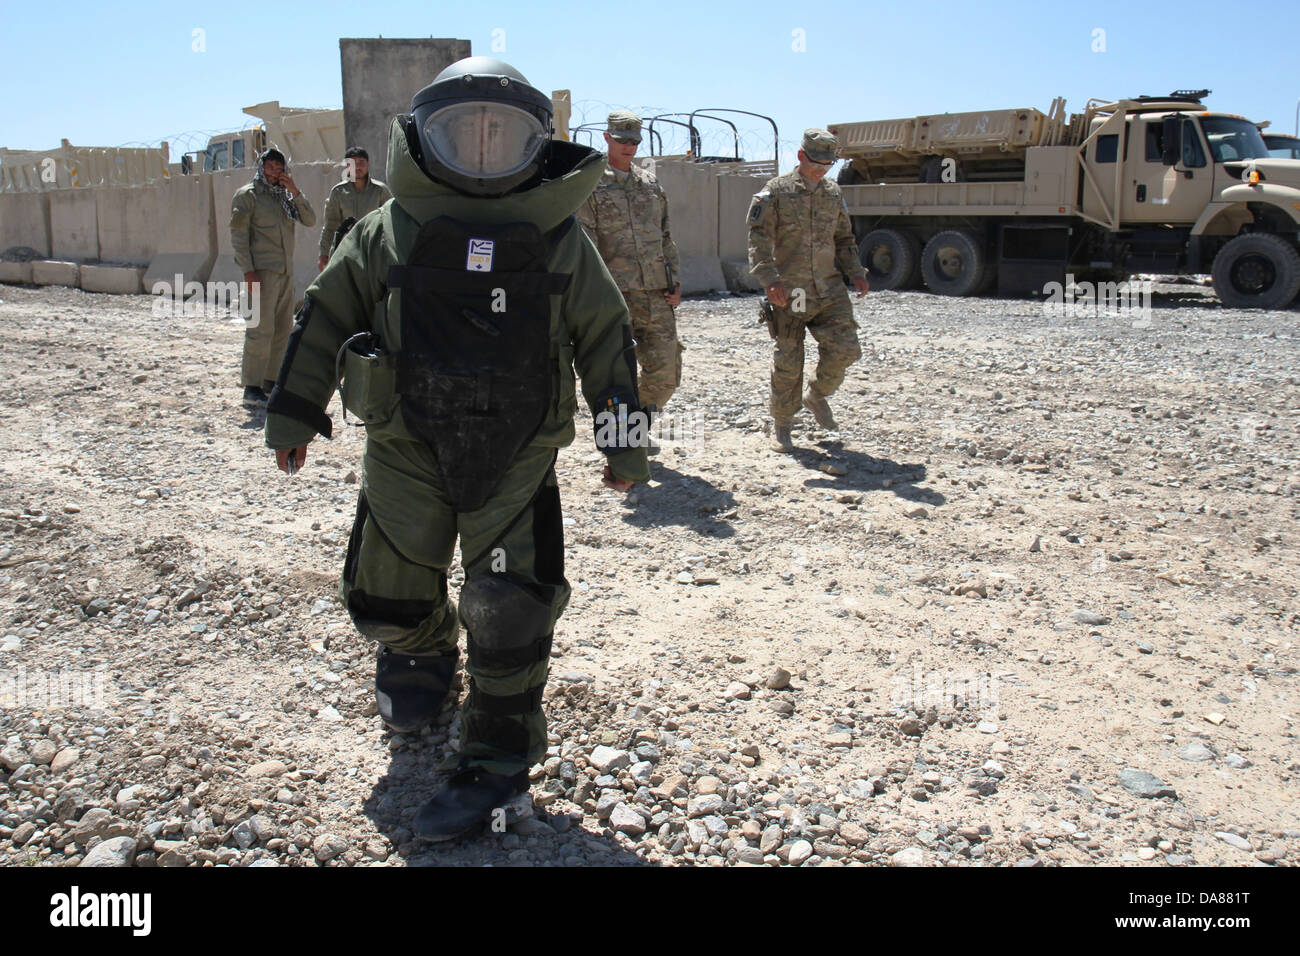 Un miembro de la Policía Nacional Afgana del orden civil viste un traje de bombas durante ejercicios de entrenamiento de eliminación de artefactos explosivos, el 4 de julio de 2013 en el este de Afganistán. Foto de stock